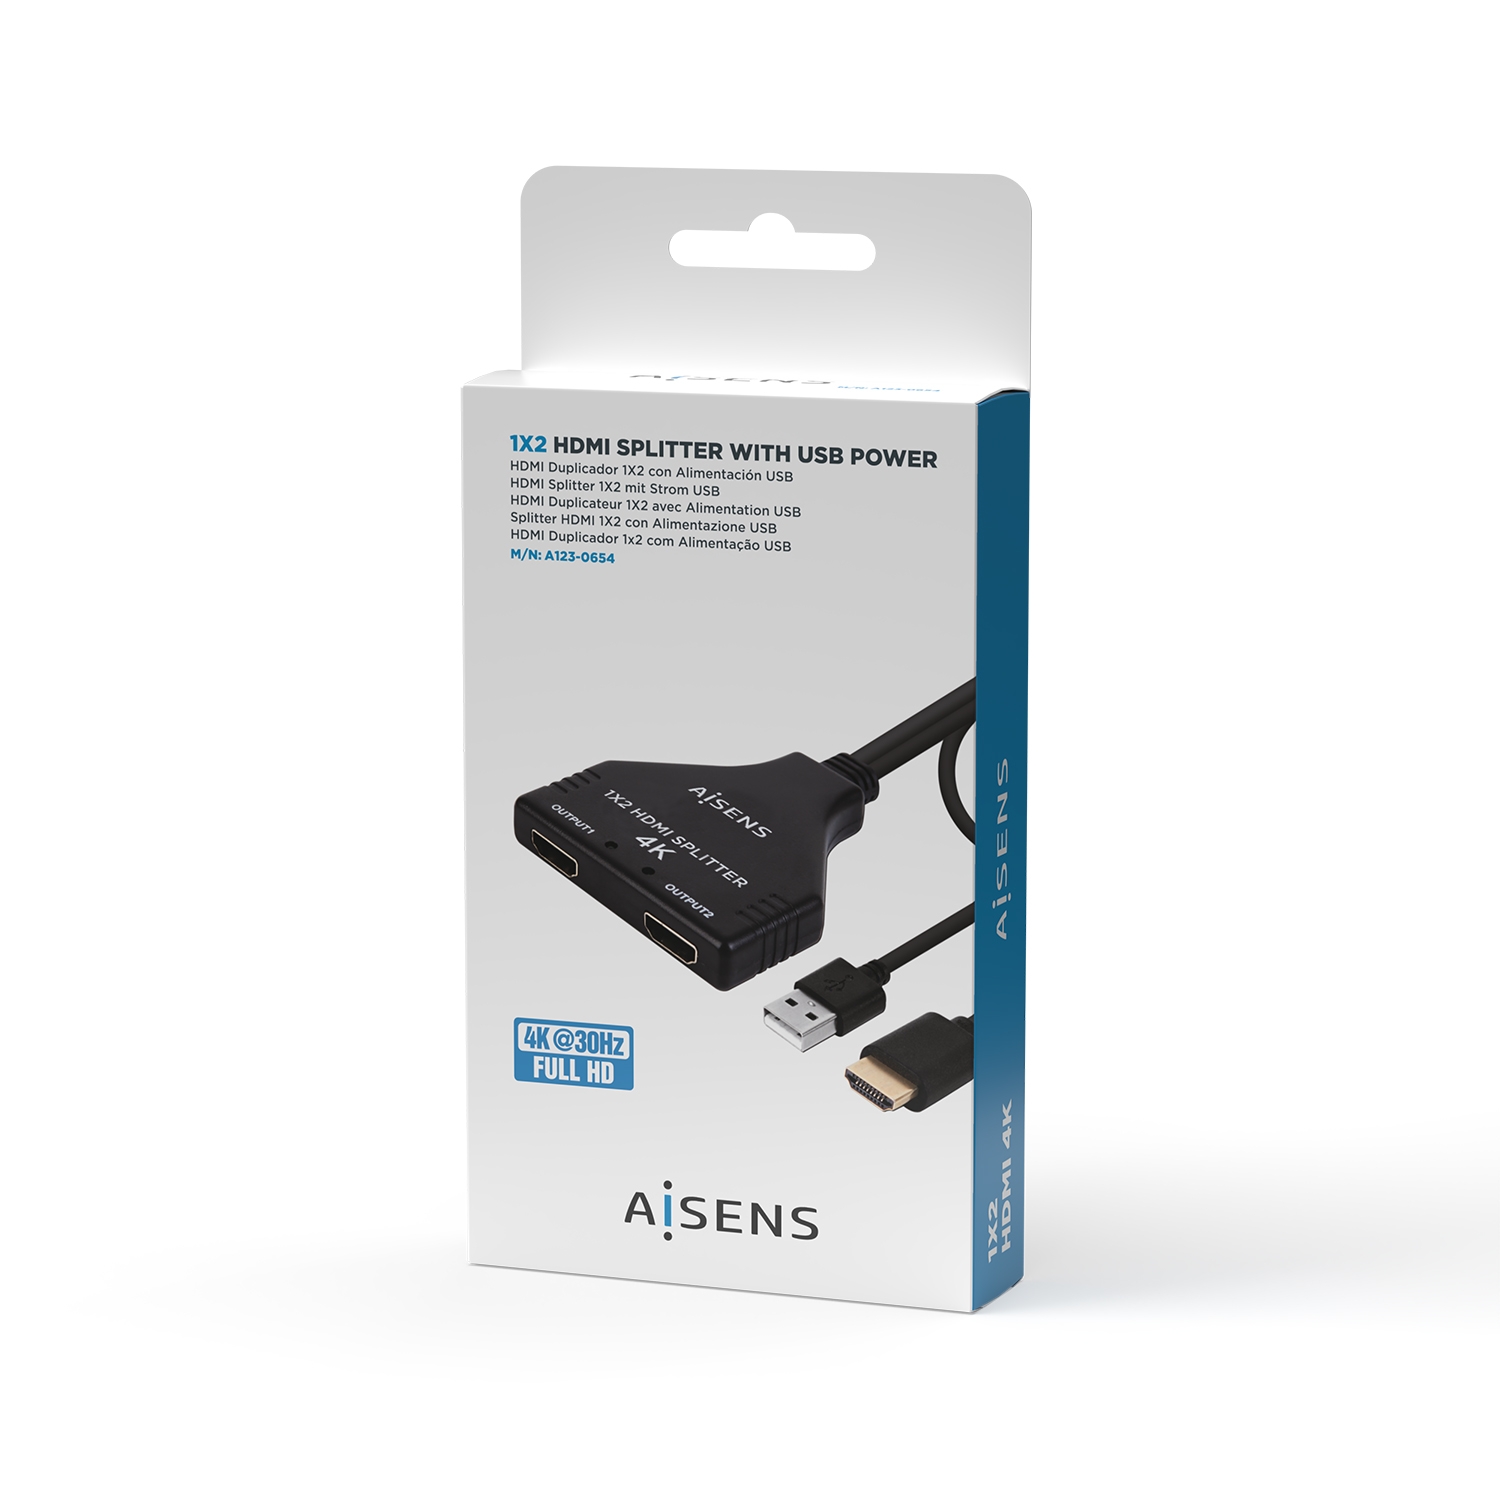 AISENS - HDMI Duplicador 4K@30HZ 1x2 con Alimentación USB y Cable, Negro,  30CM - AISENS®